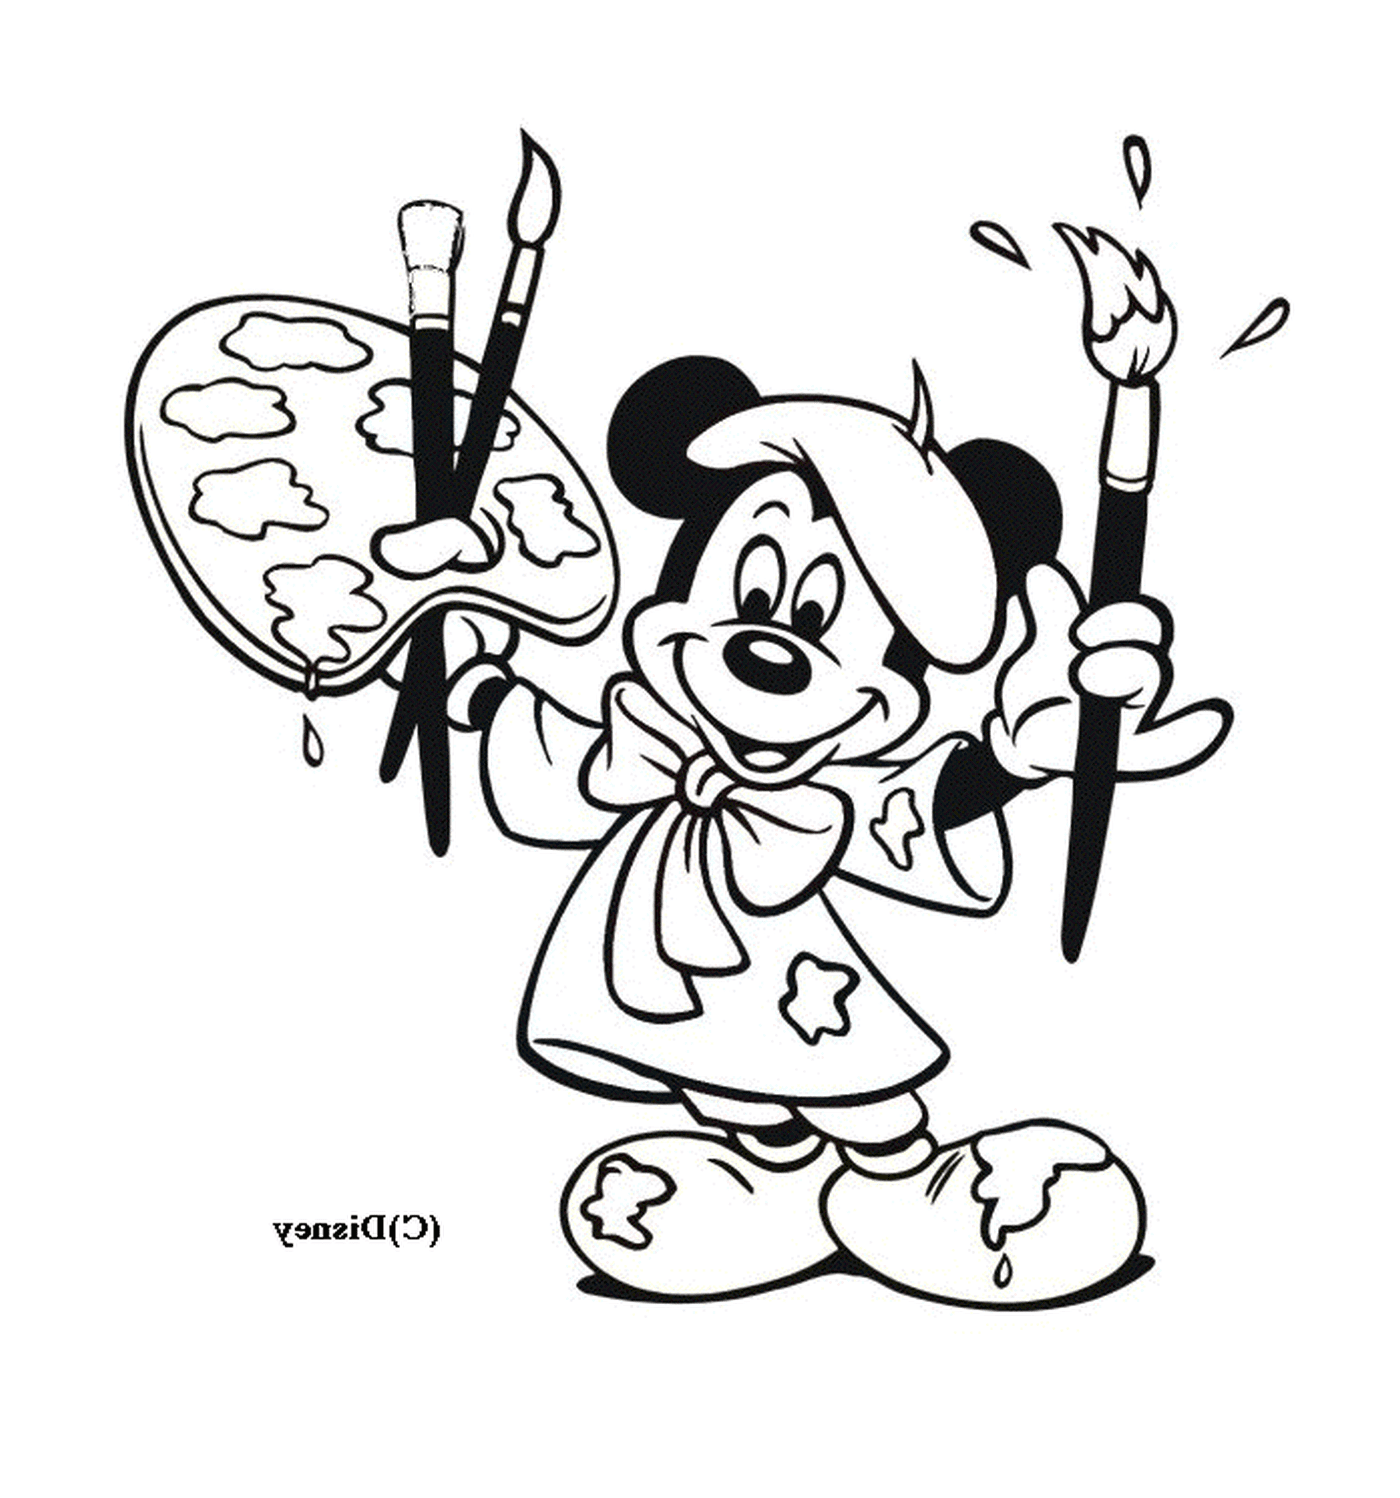  Mickey ist Maler: mit Pinseln und einer Staffelei 